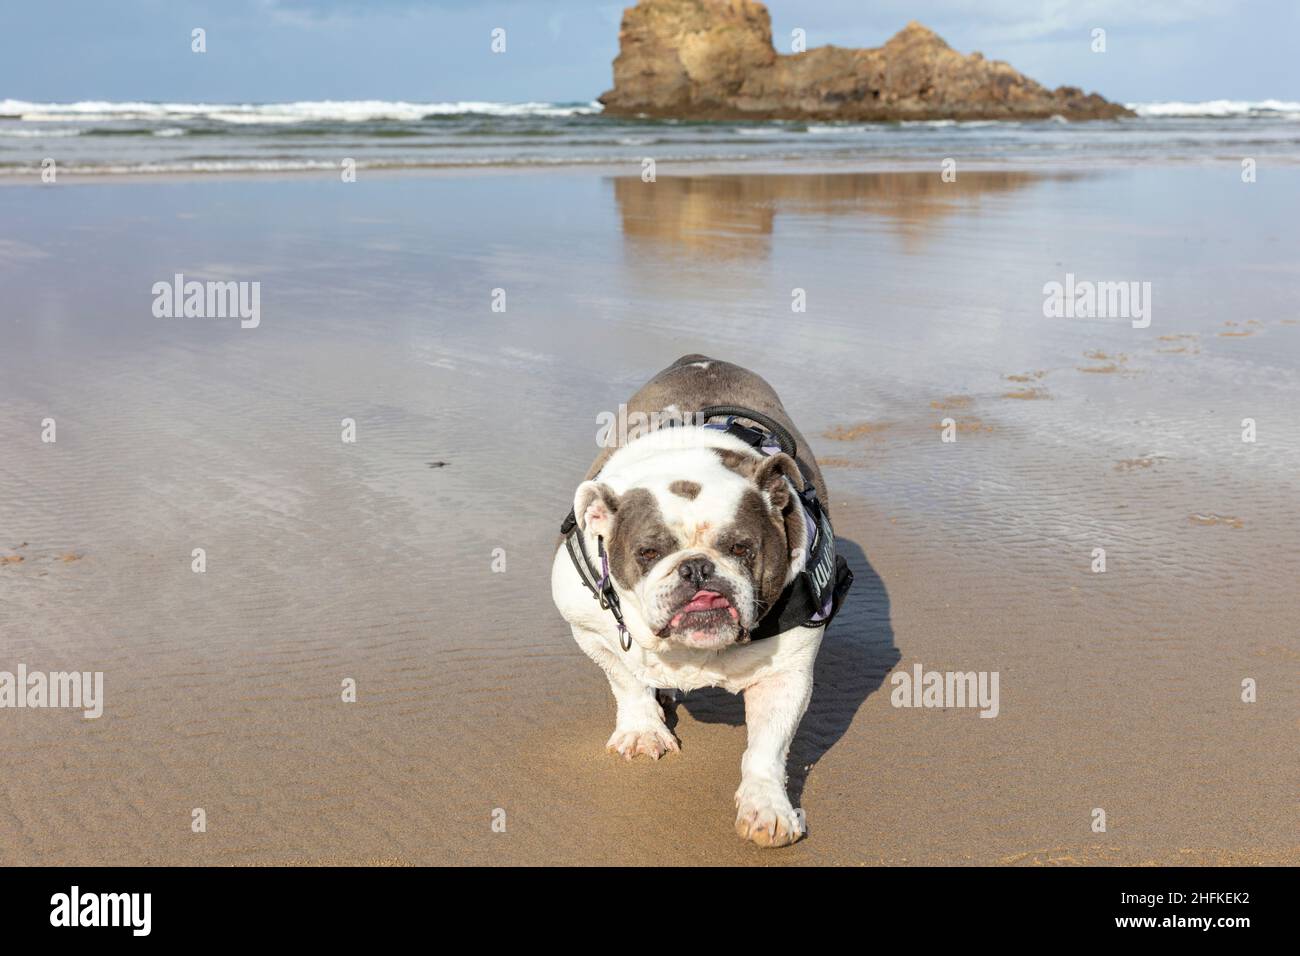 Bulldog inglés, Bulldog británico, perro en la playa, perro, Bulldog, Bulldogs, Perrenporth playa Cornwall, Reino Unido, Inglaterra, paseo de perros en la playa, perros, playa, Foto de stock